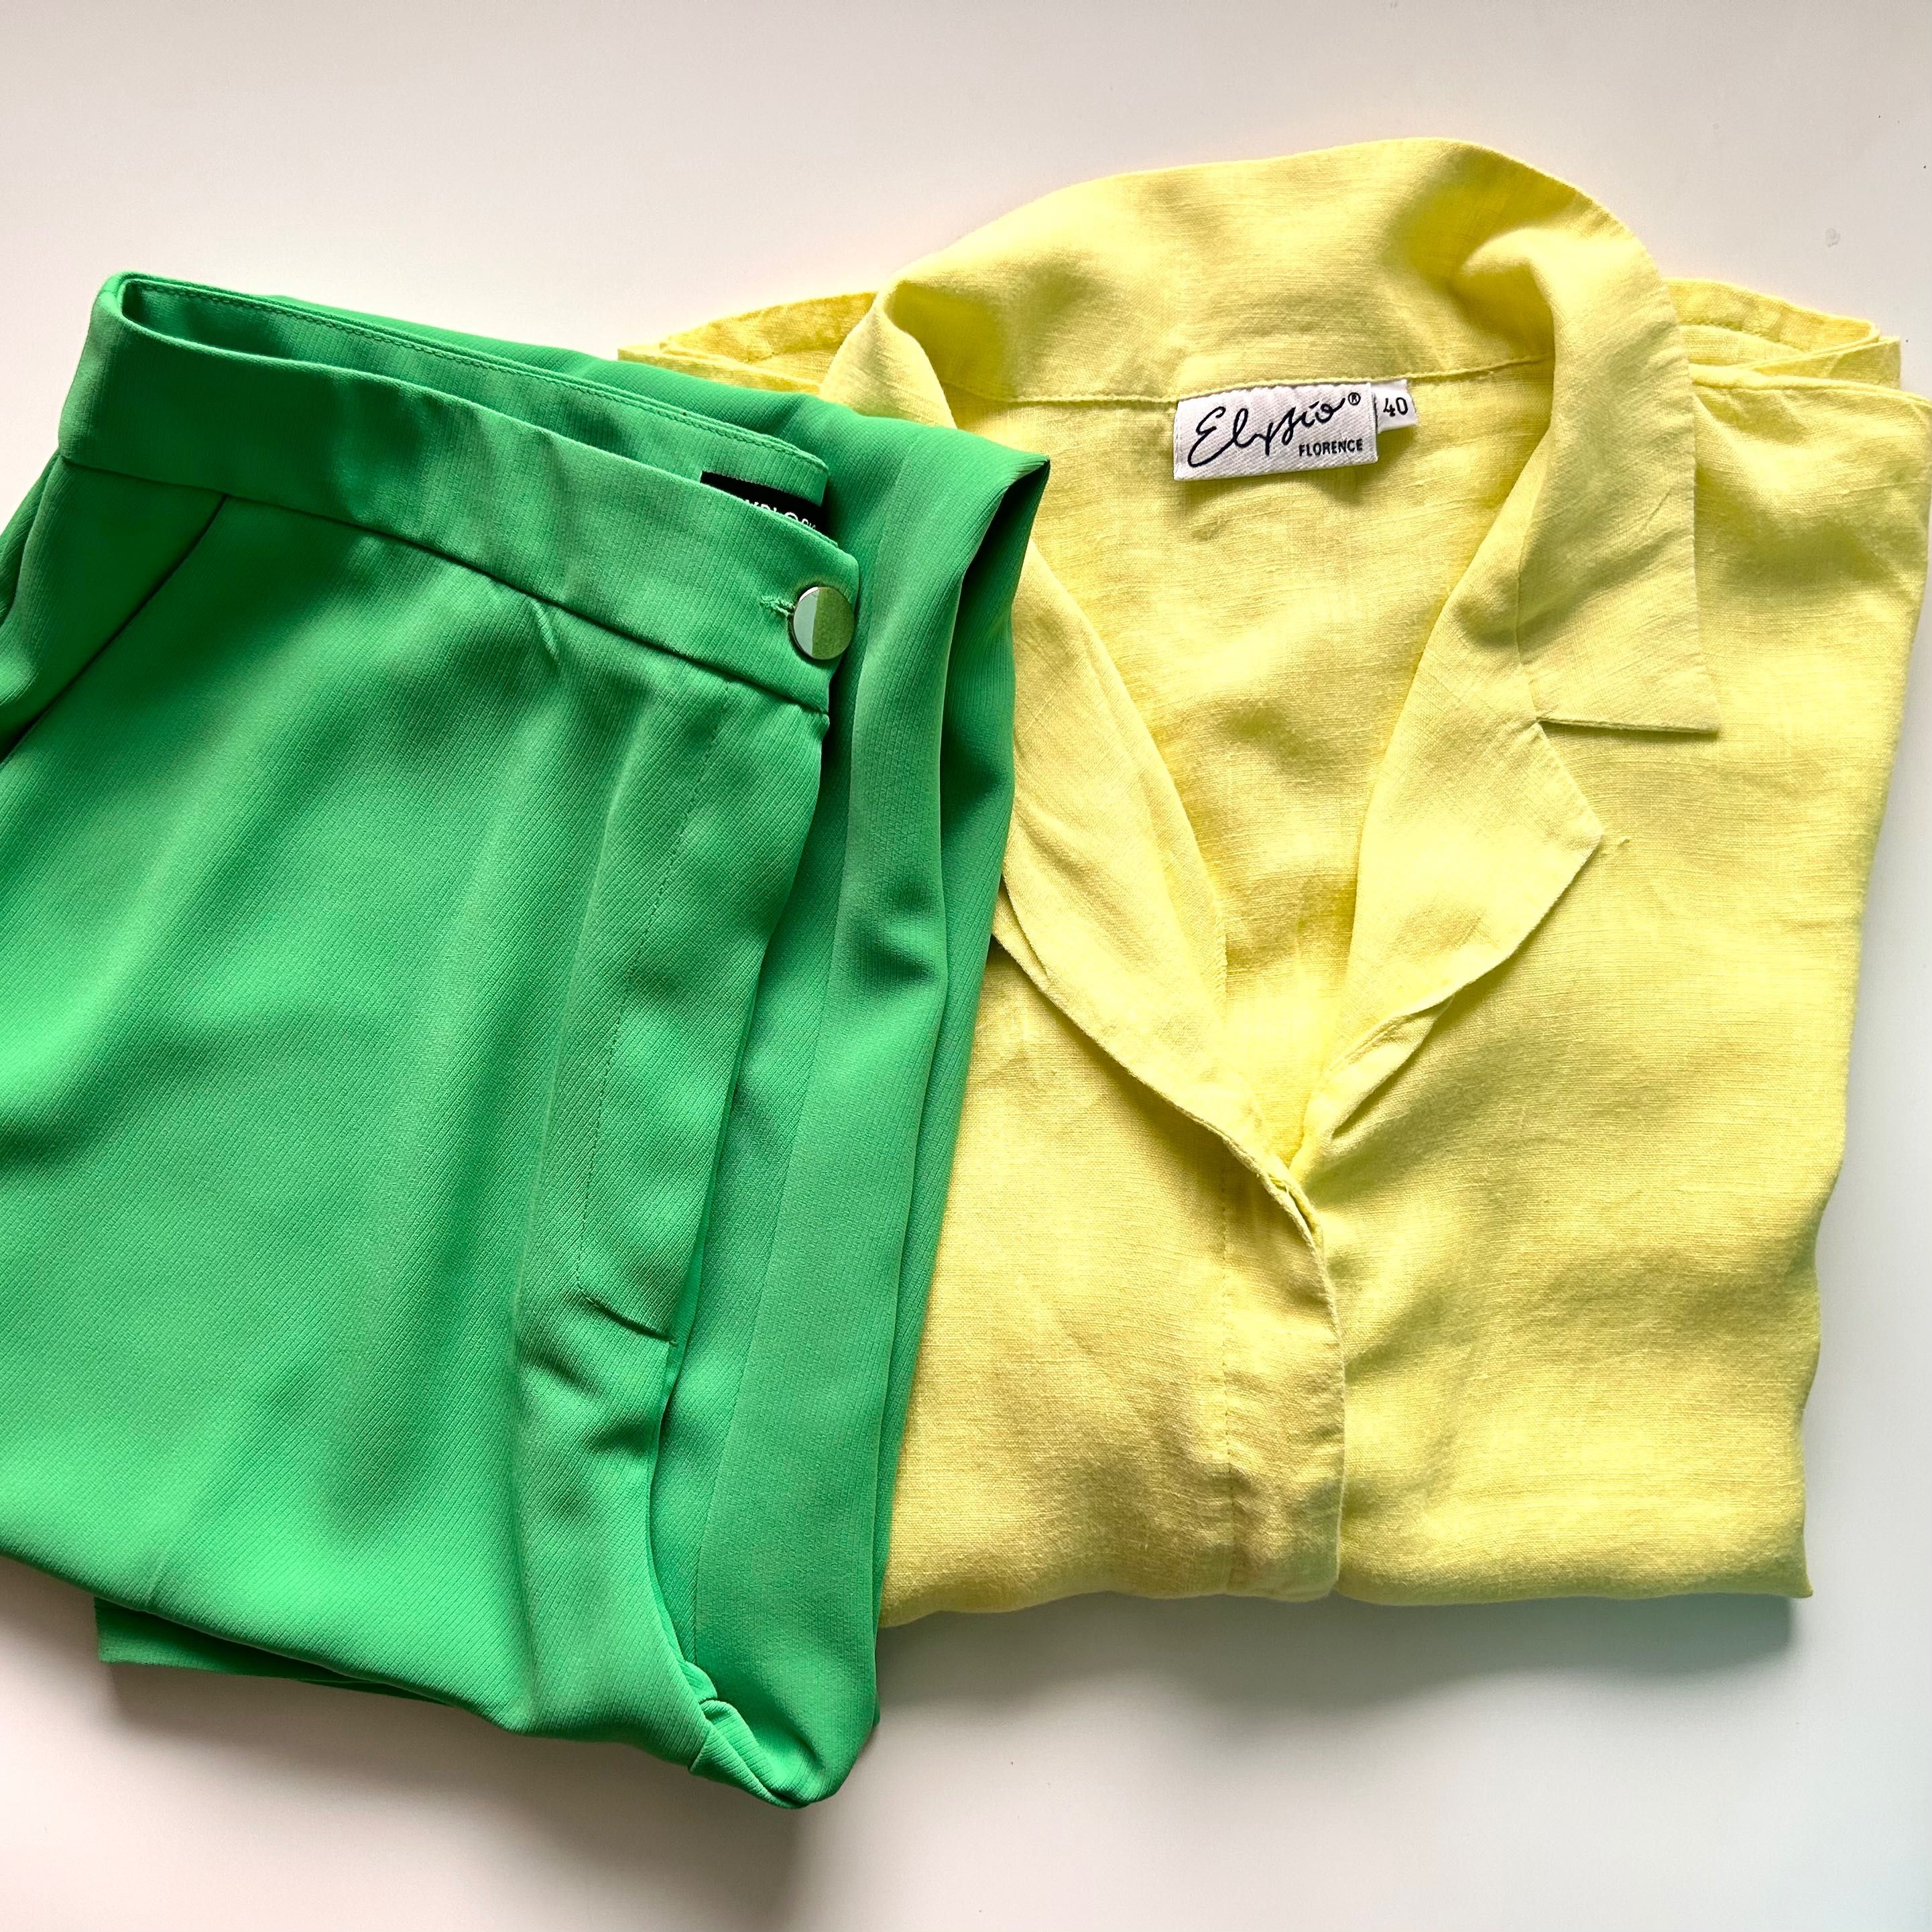 Елегантен панталон в наситен зелен цвят и ленена риза в жълто